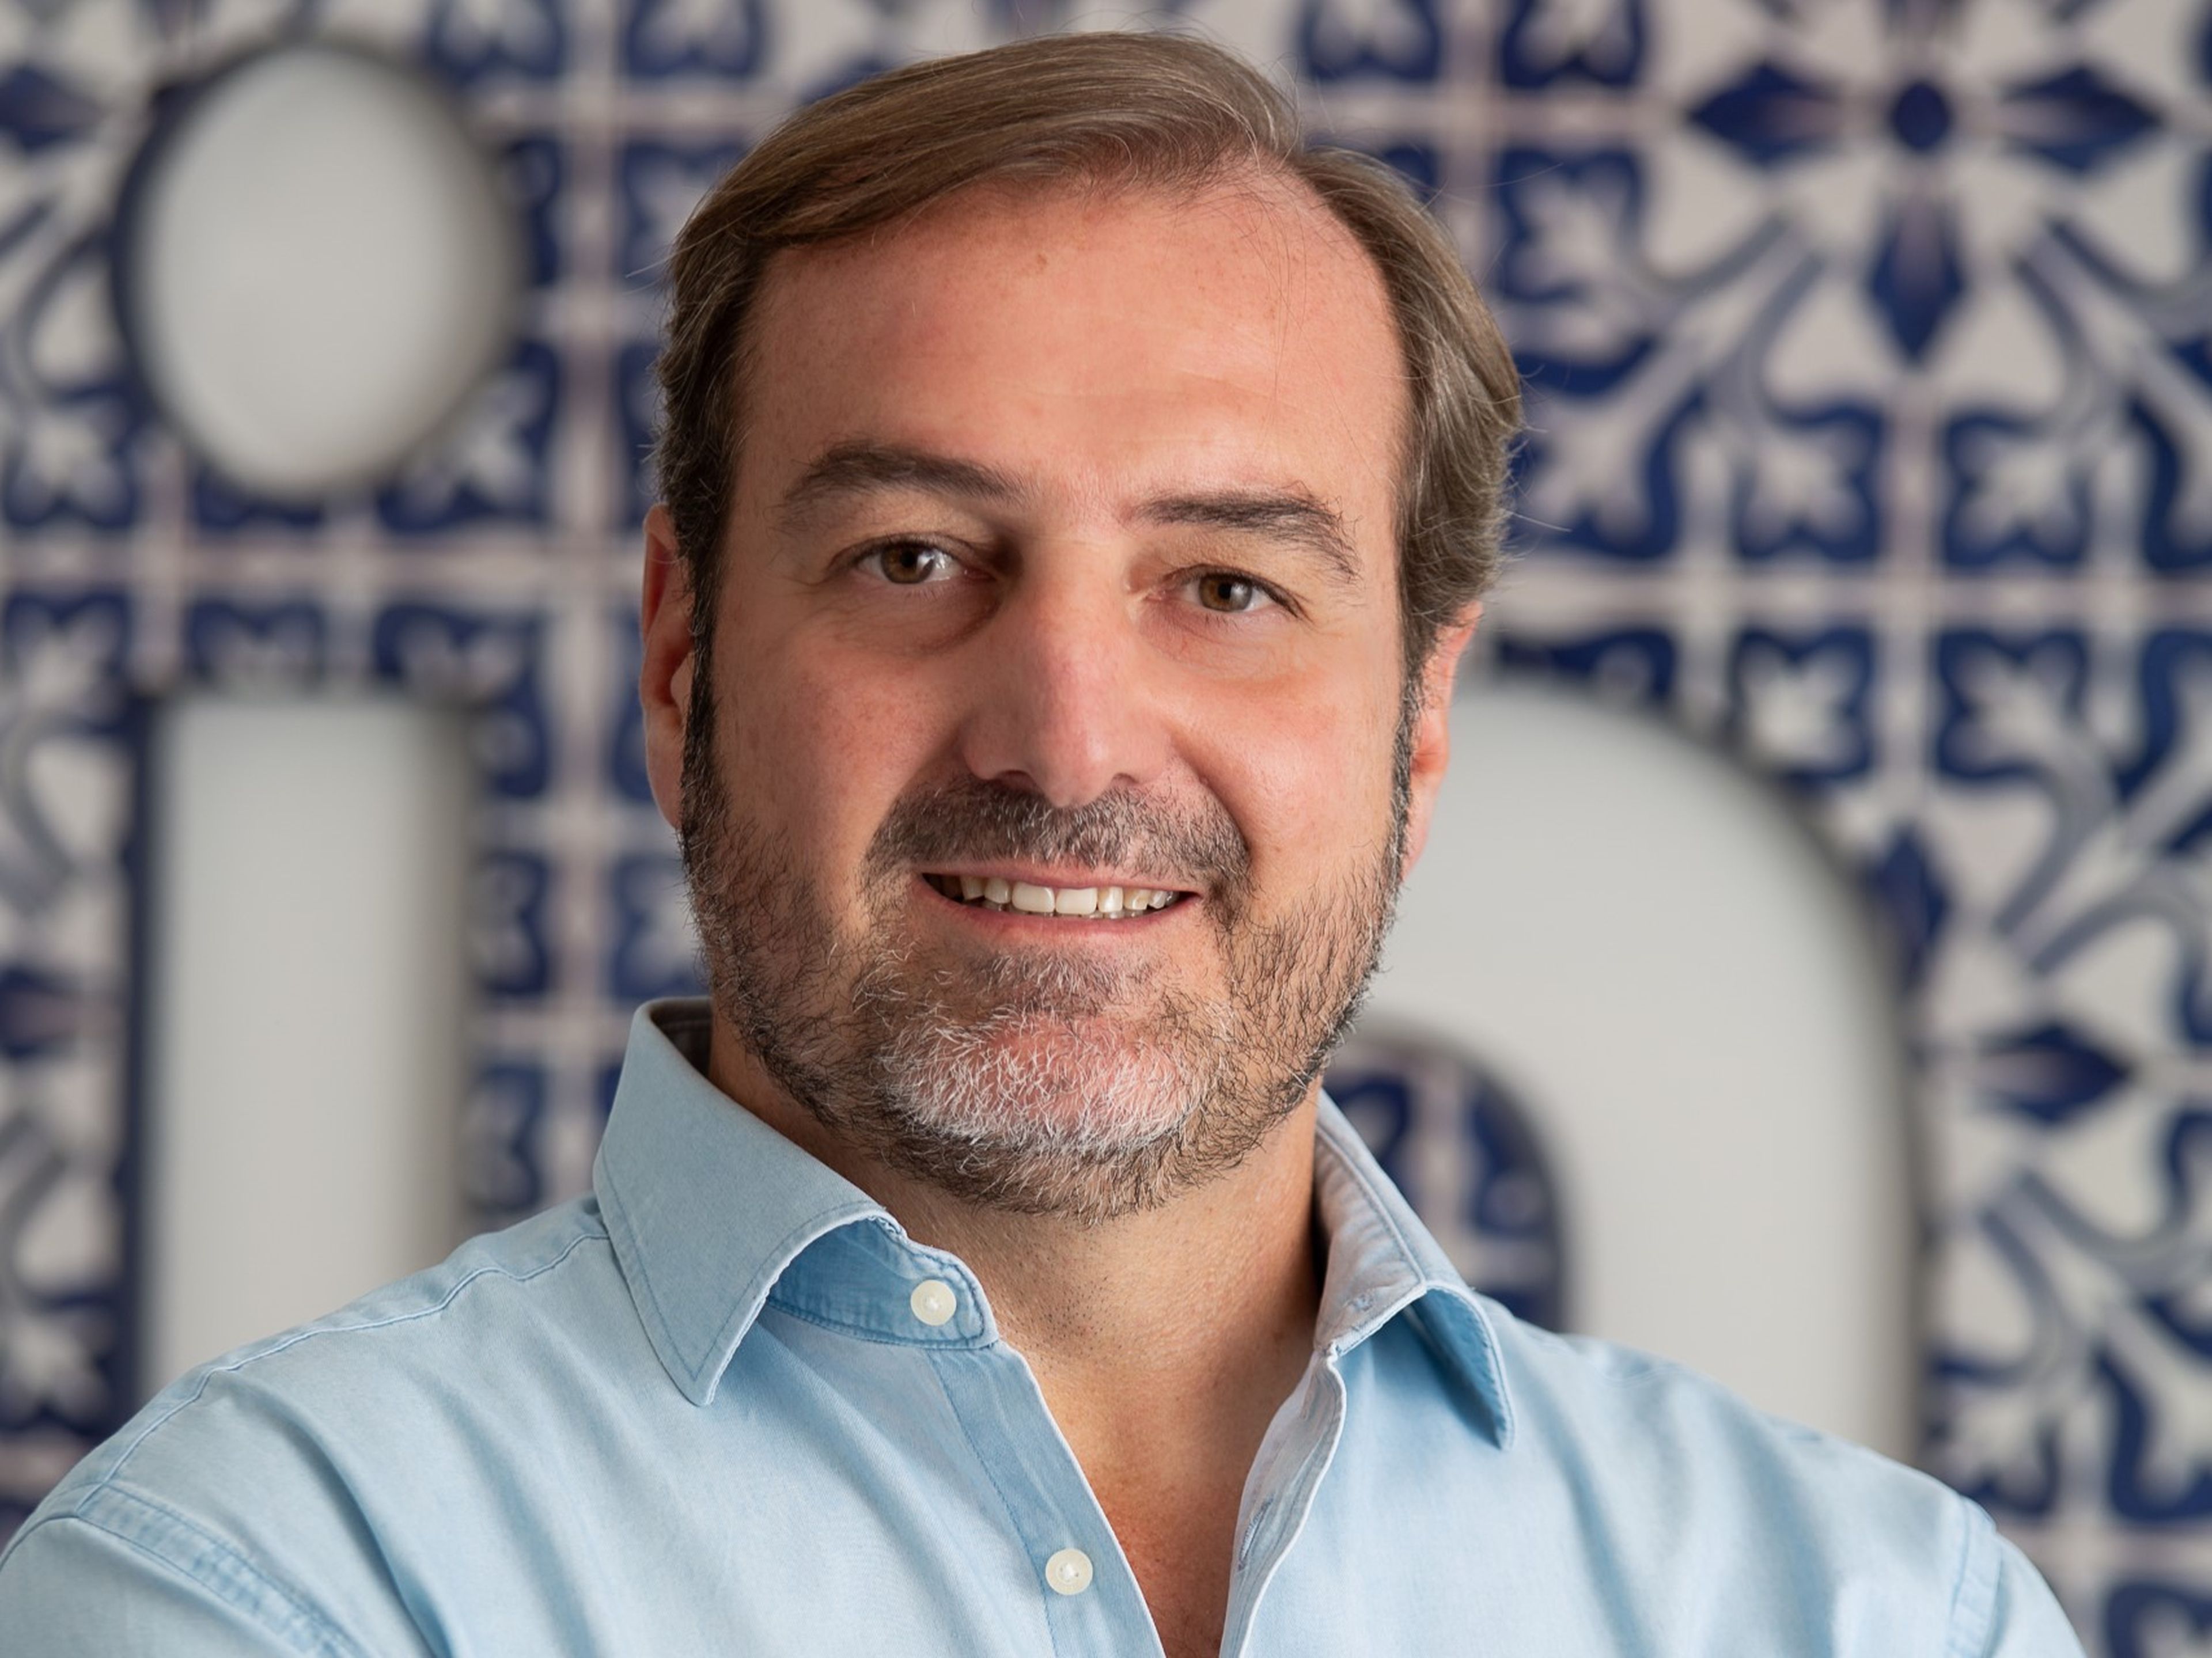 Ángel Sáenz de Cenzano, CEO de LinkedIn España y Portugal.